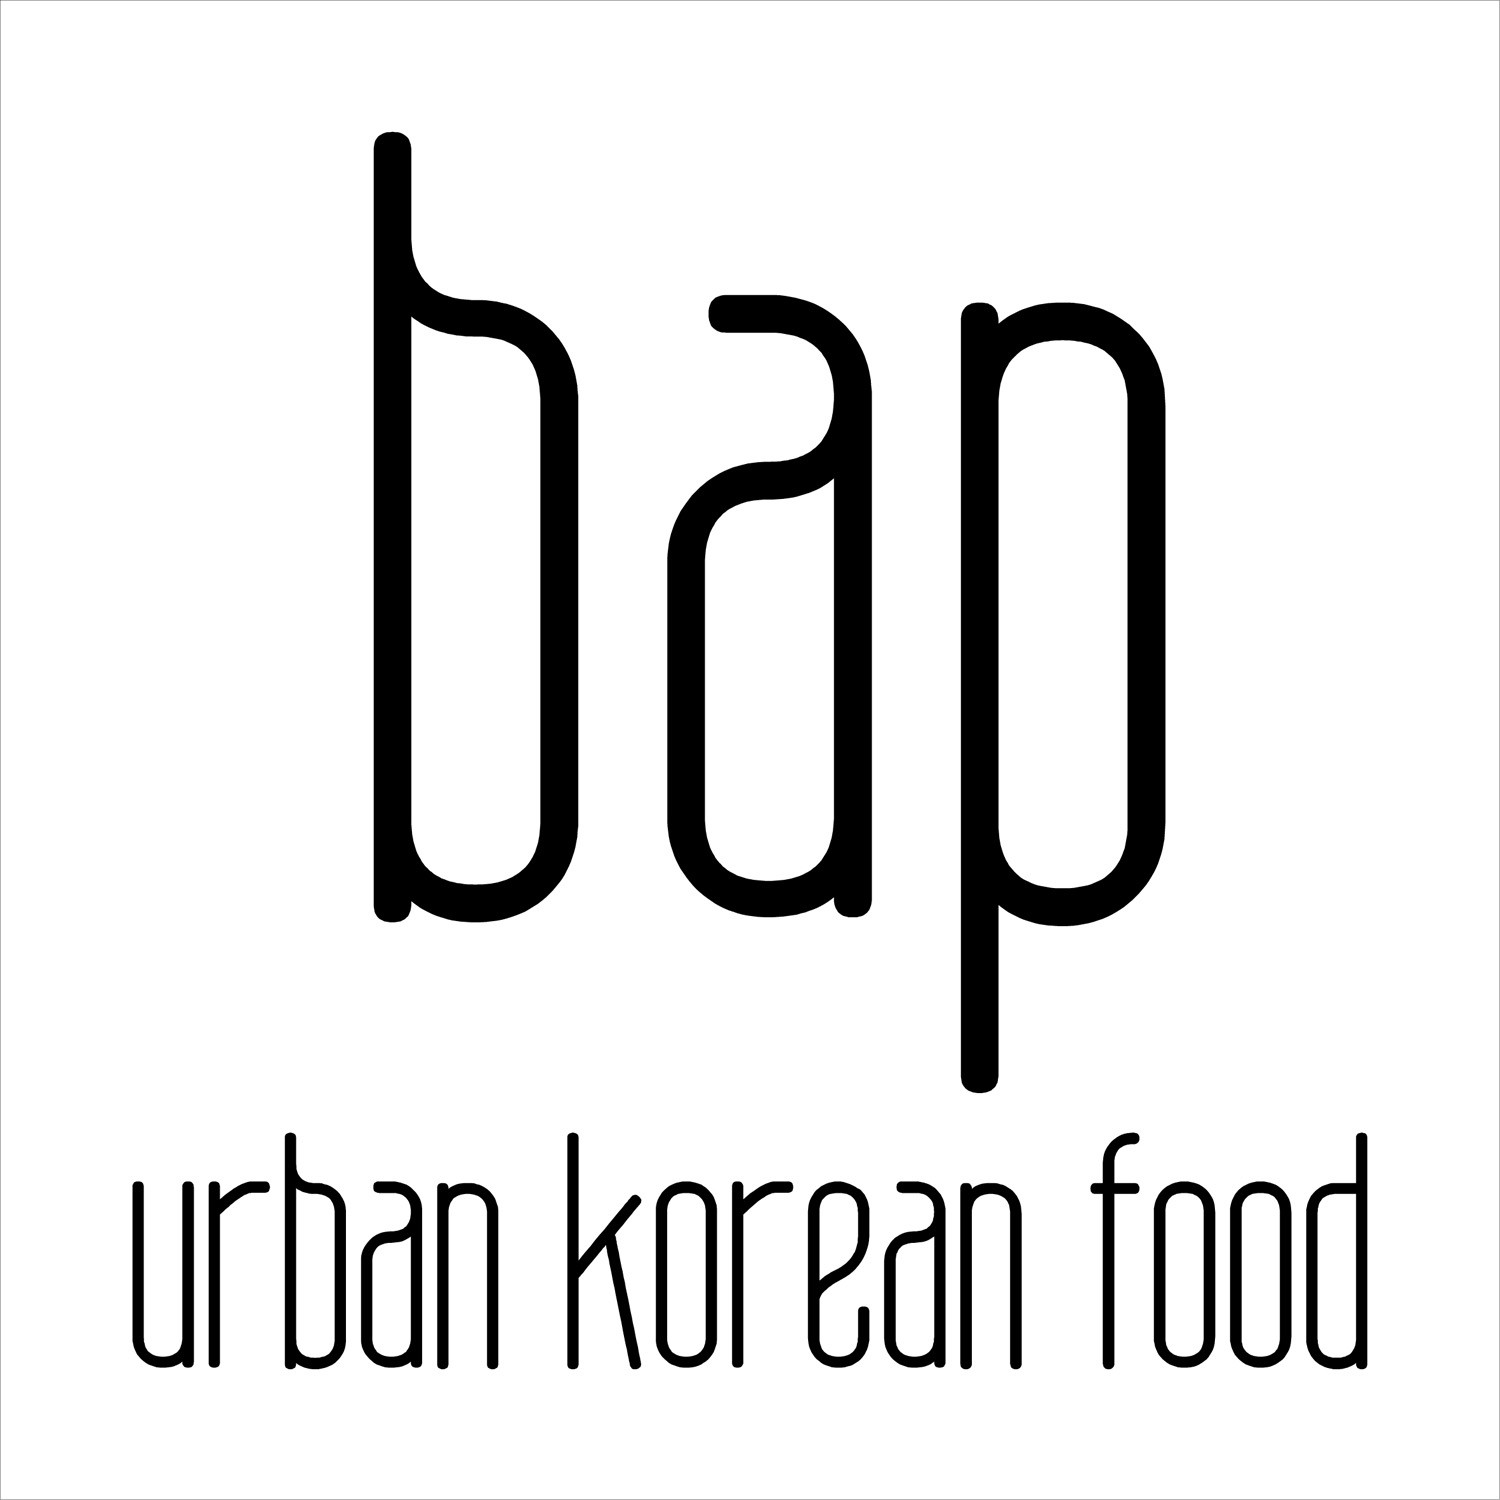 Bap Urban Korean Food